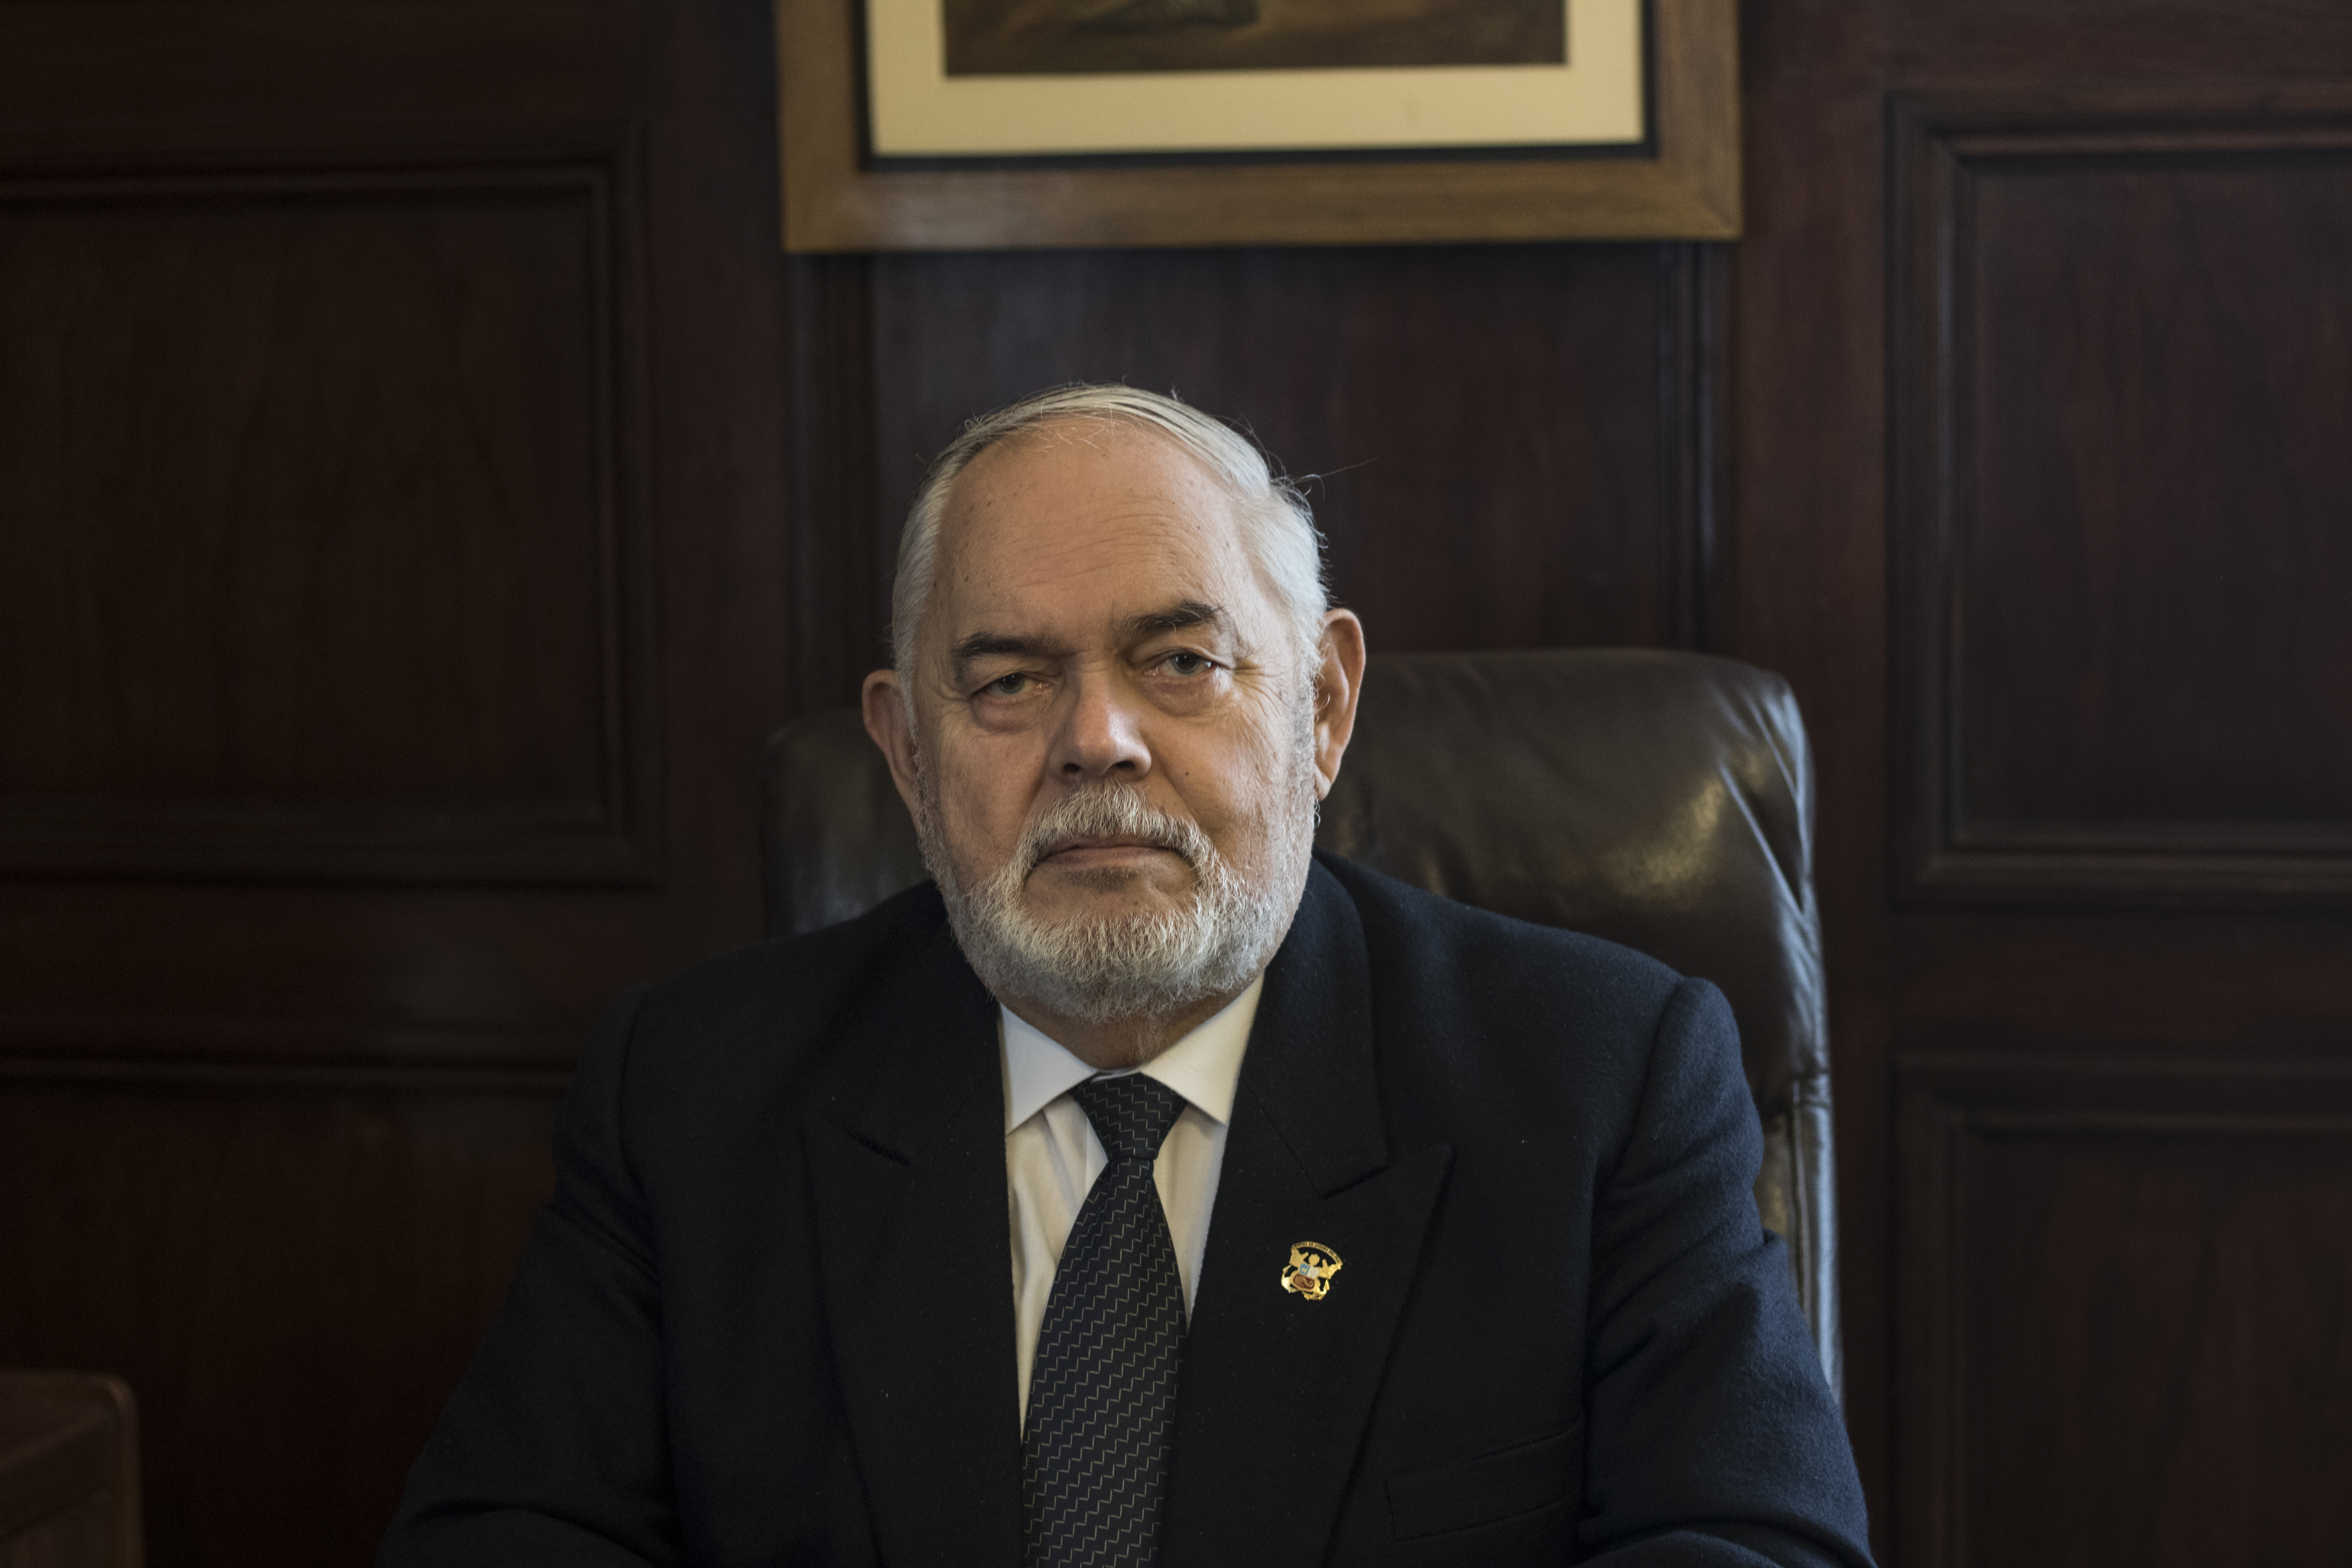 Jorge Montoya descartó participar de un adelanto de elecciones: “Sería dar un golpe de Estado”